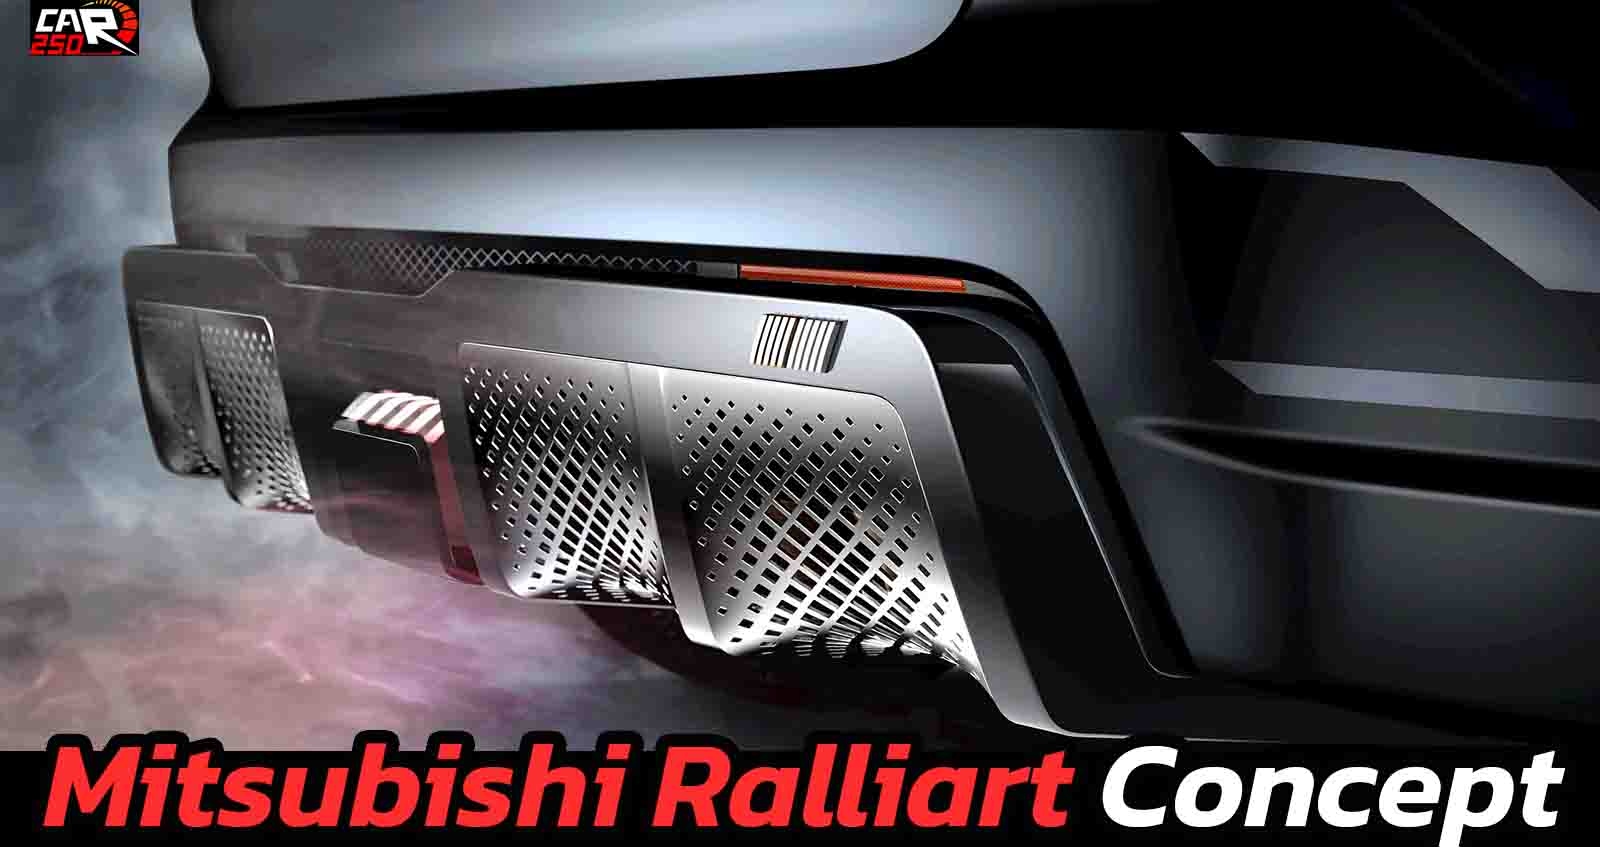 ปล่อยทีเซอร์ Mitsubishi Ralliart Concept ก่อนเปิดตัวเดือนหน้า